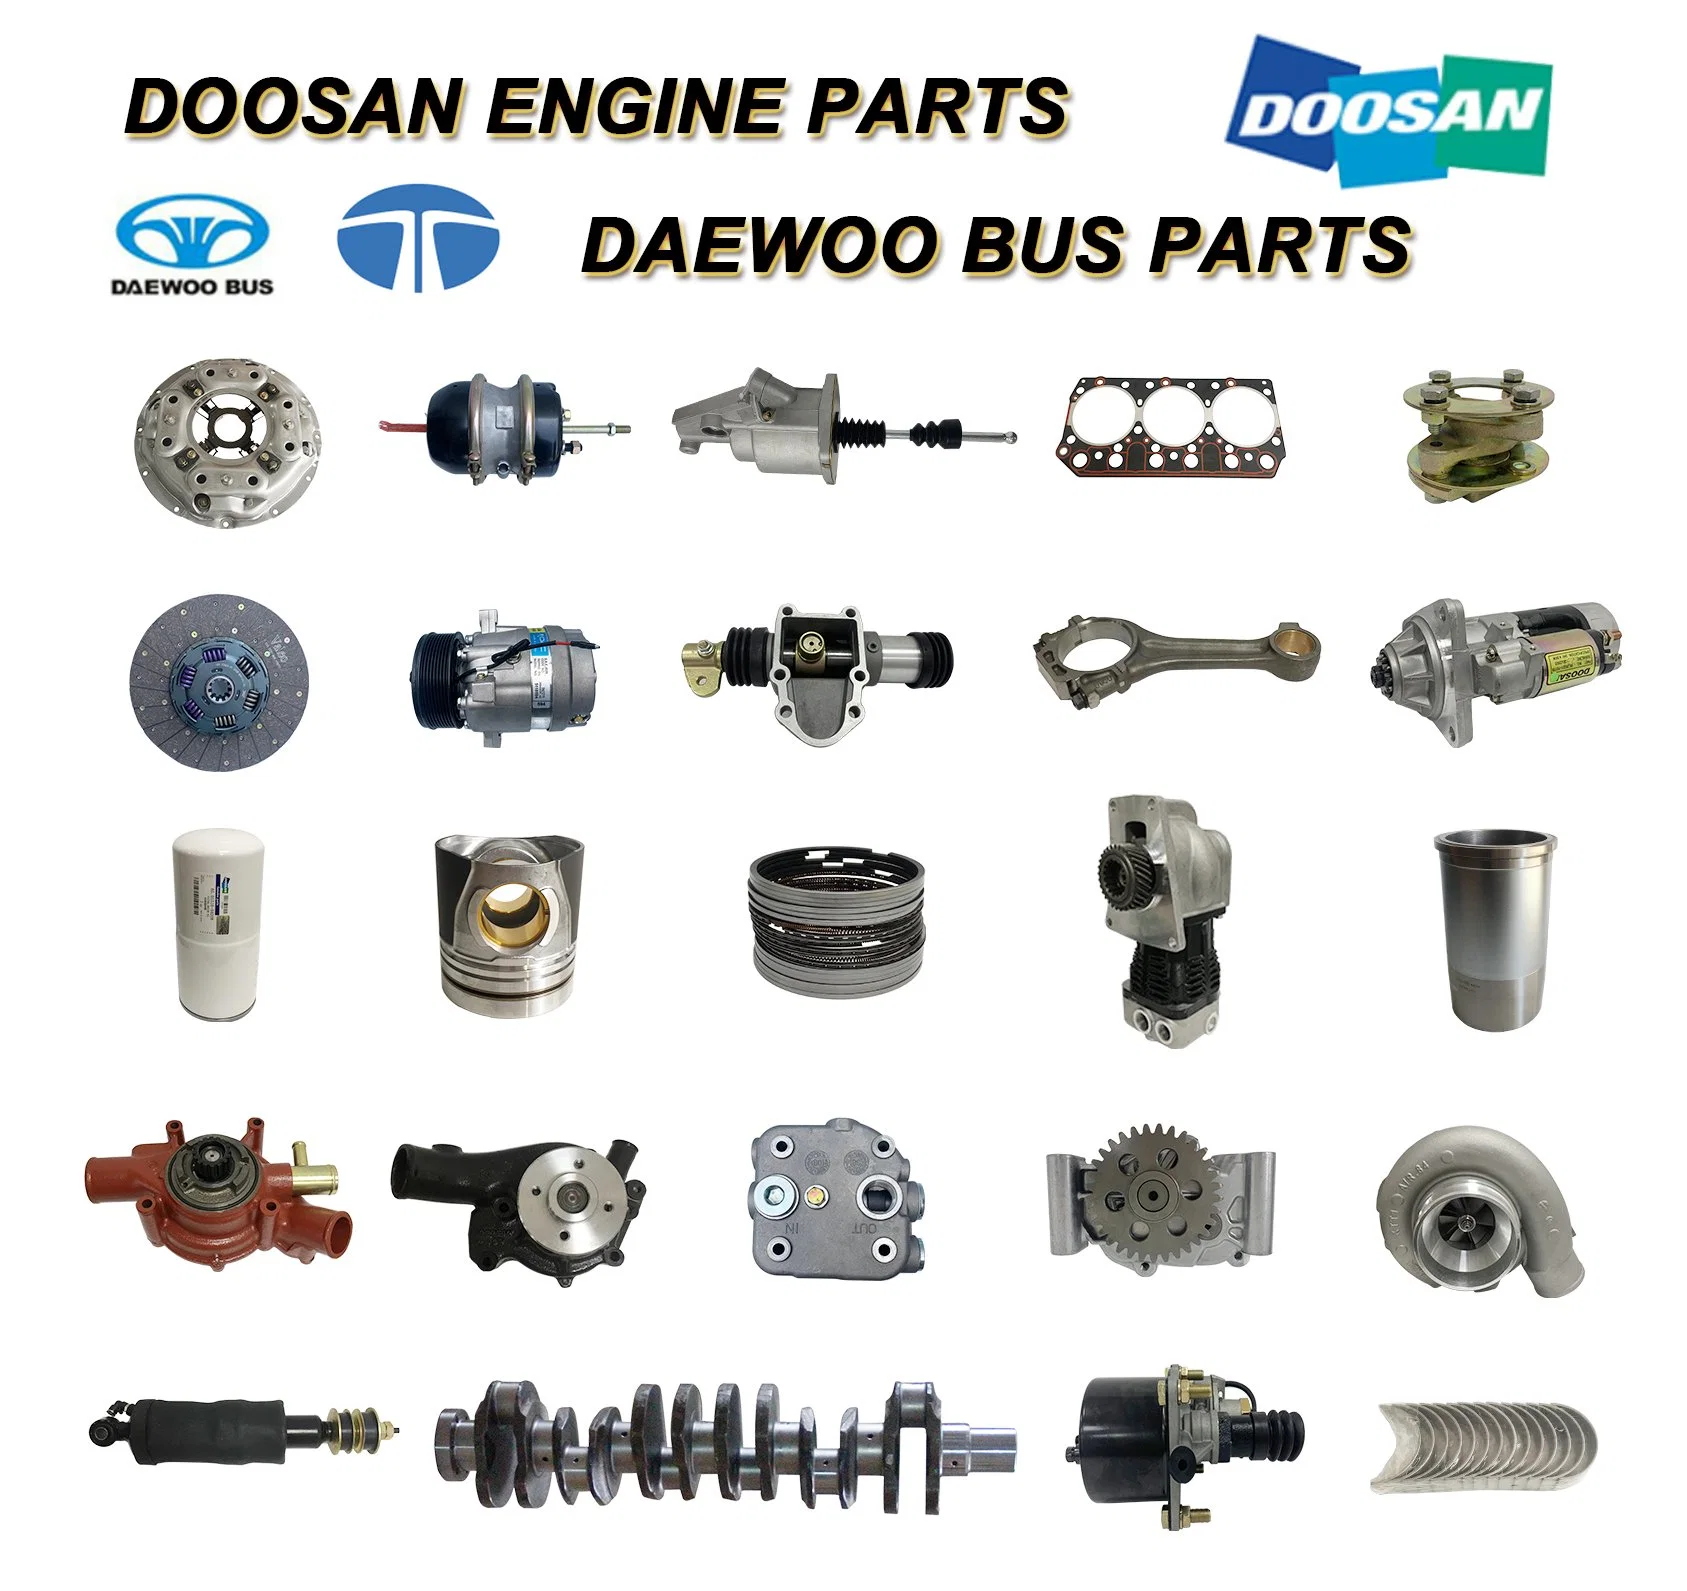 Doosan Excavator Parts Dx12 Liner for Daewoo Bus Truck Marine 150117-00090